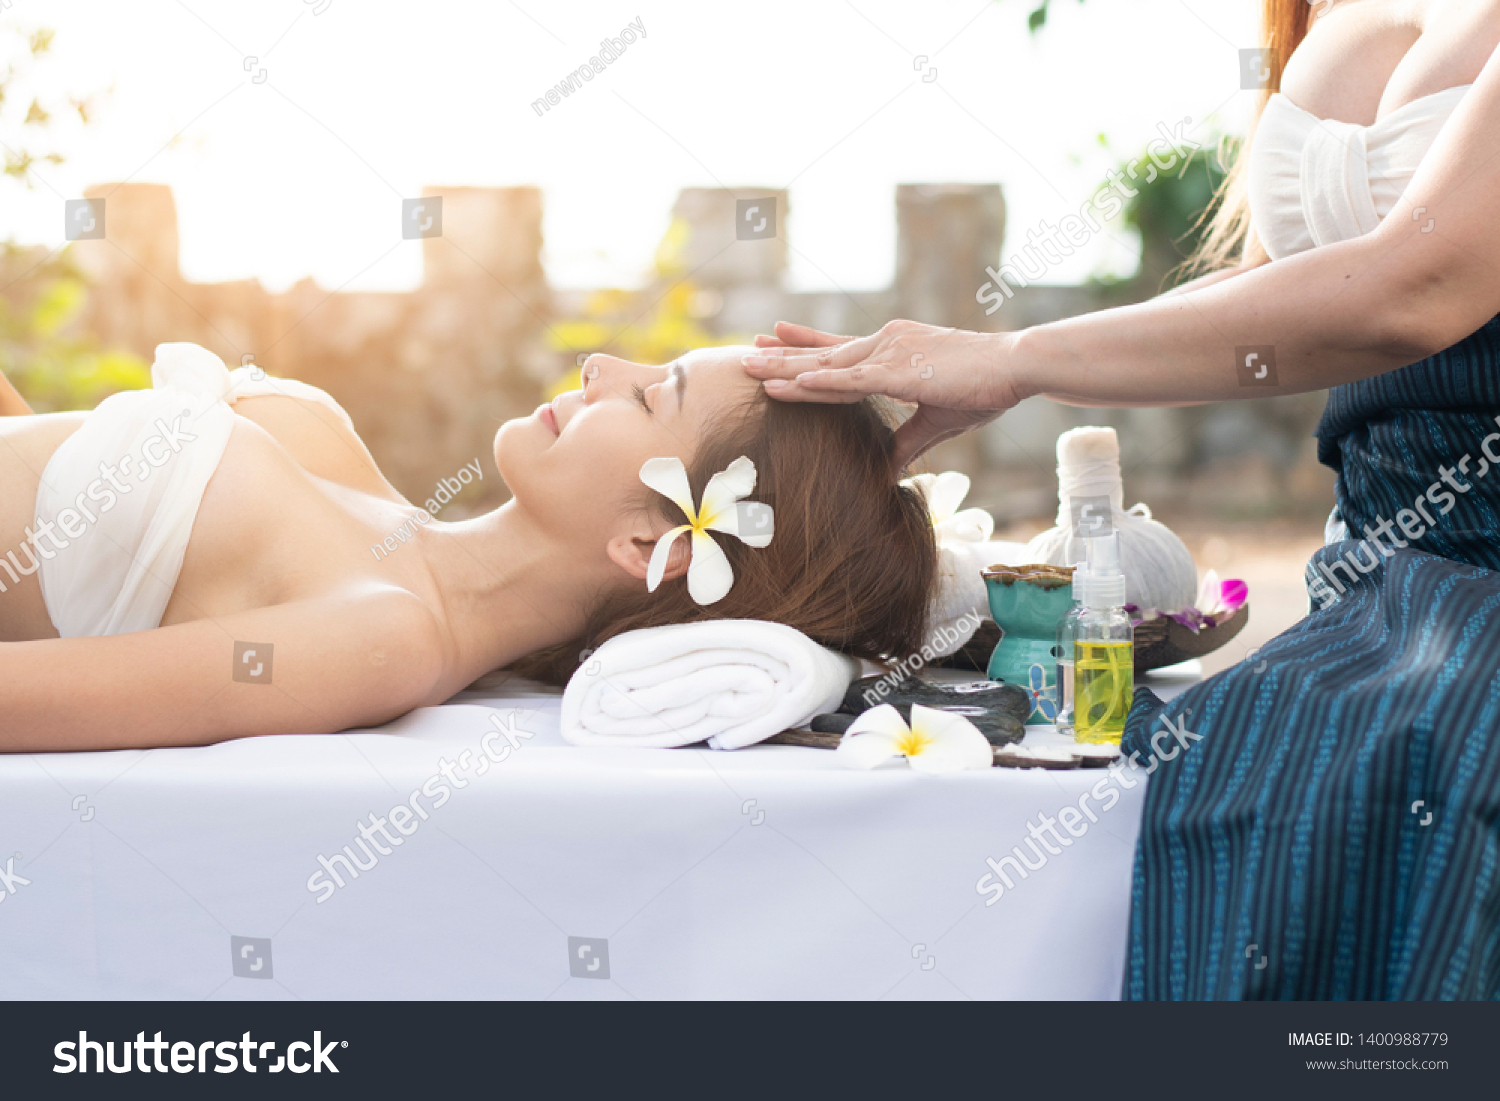 Sexy Massage Time